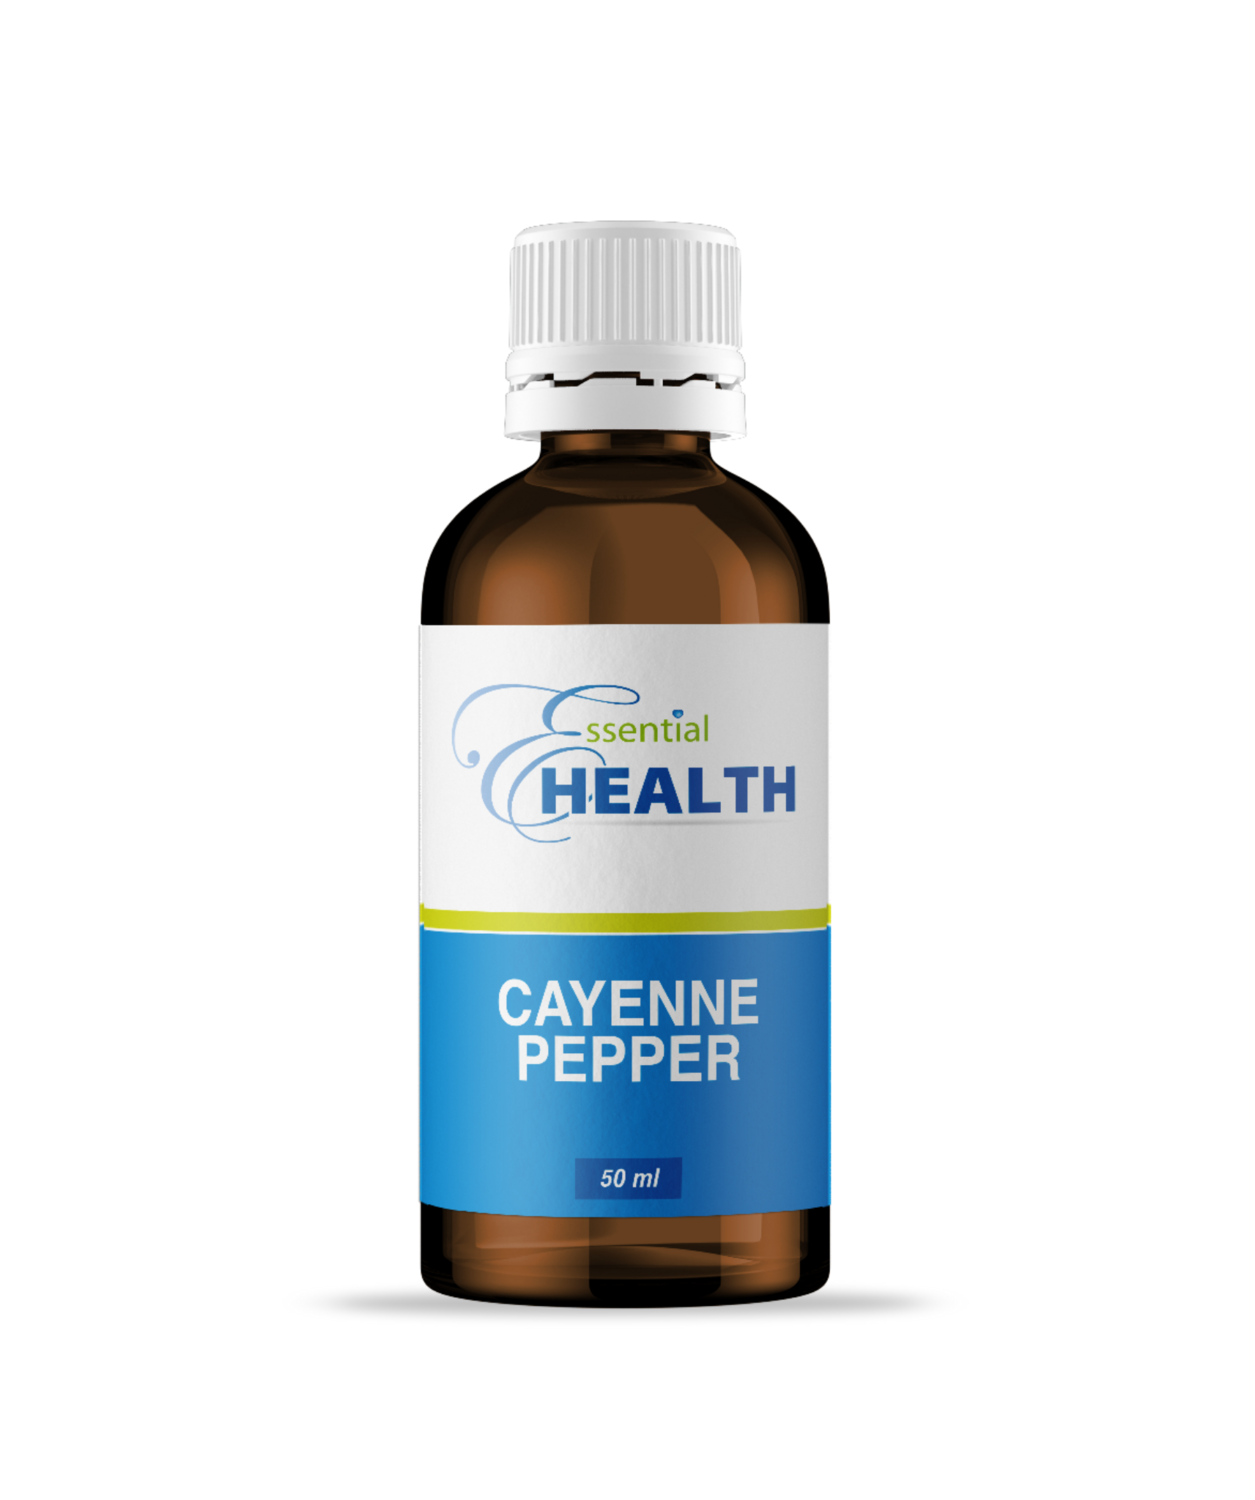 Essential Health Cayenne Pepper 50ml